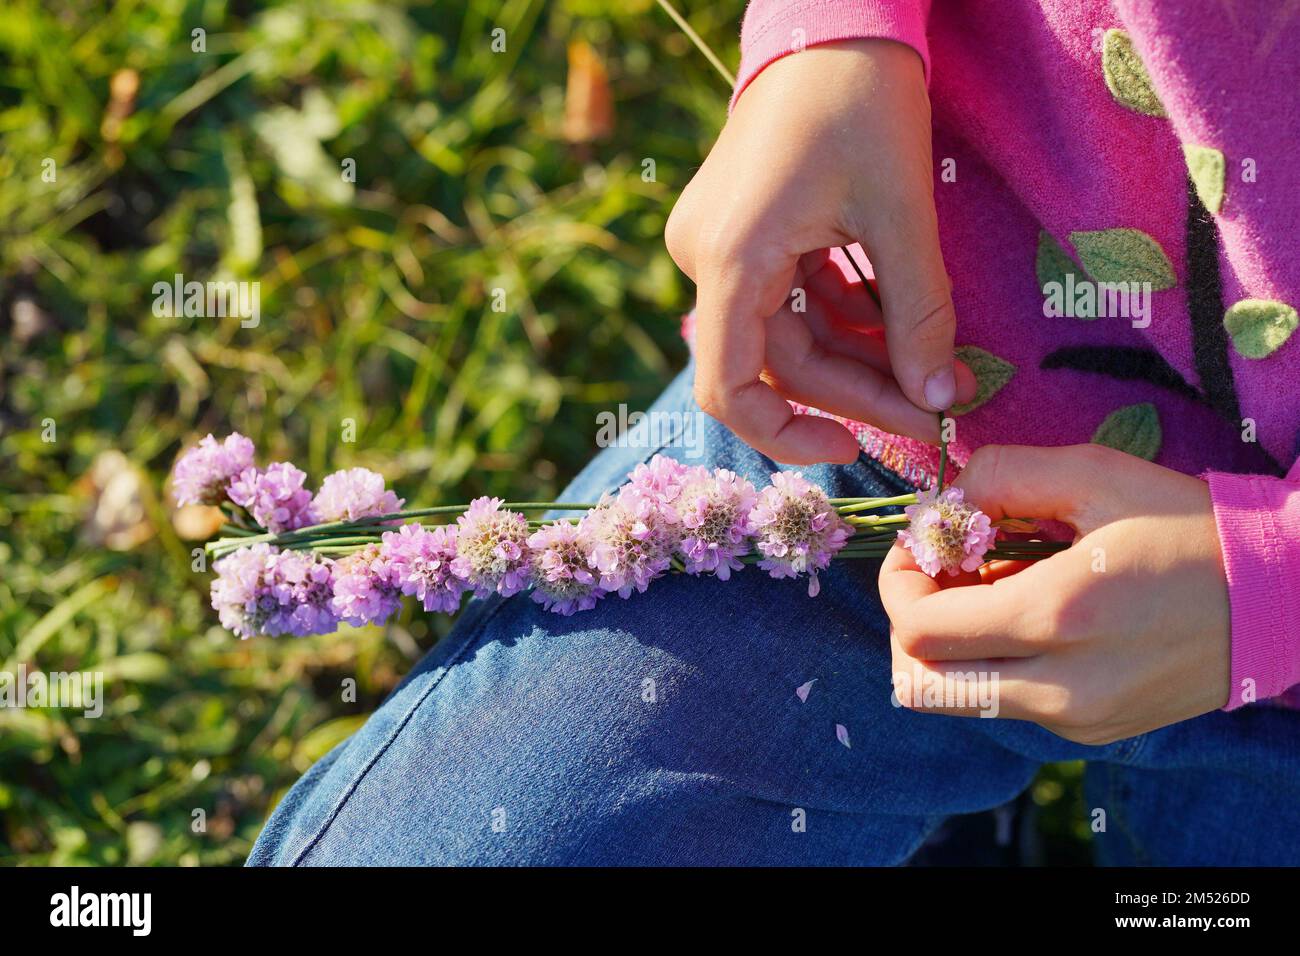 Die Hände des Kindes weben einen Kranz aus violetten Blumen Stockfoto